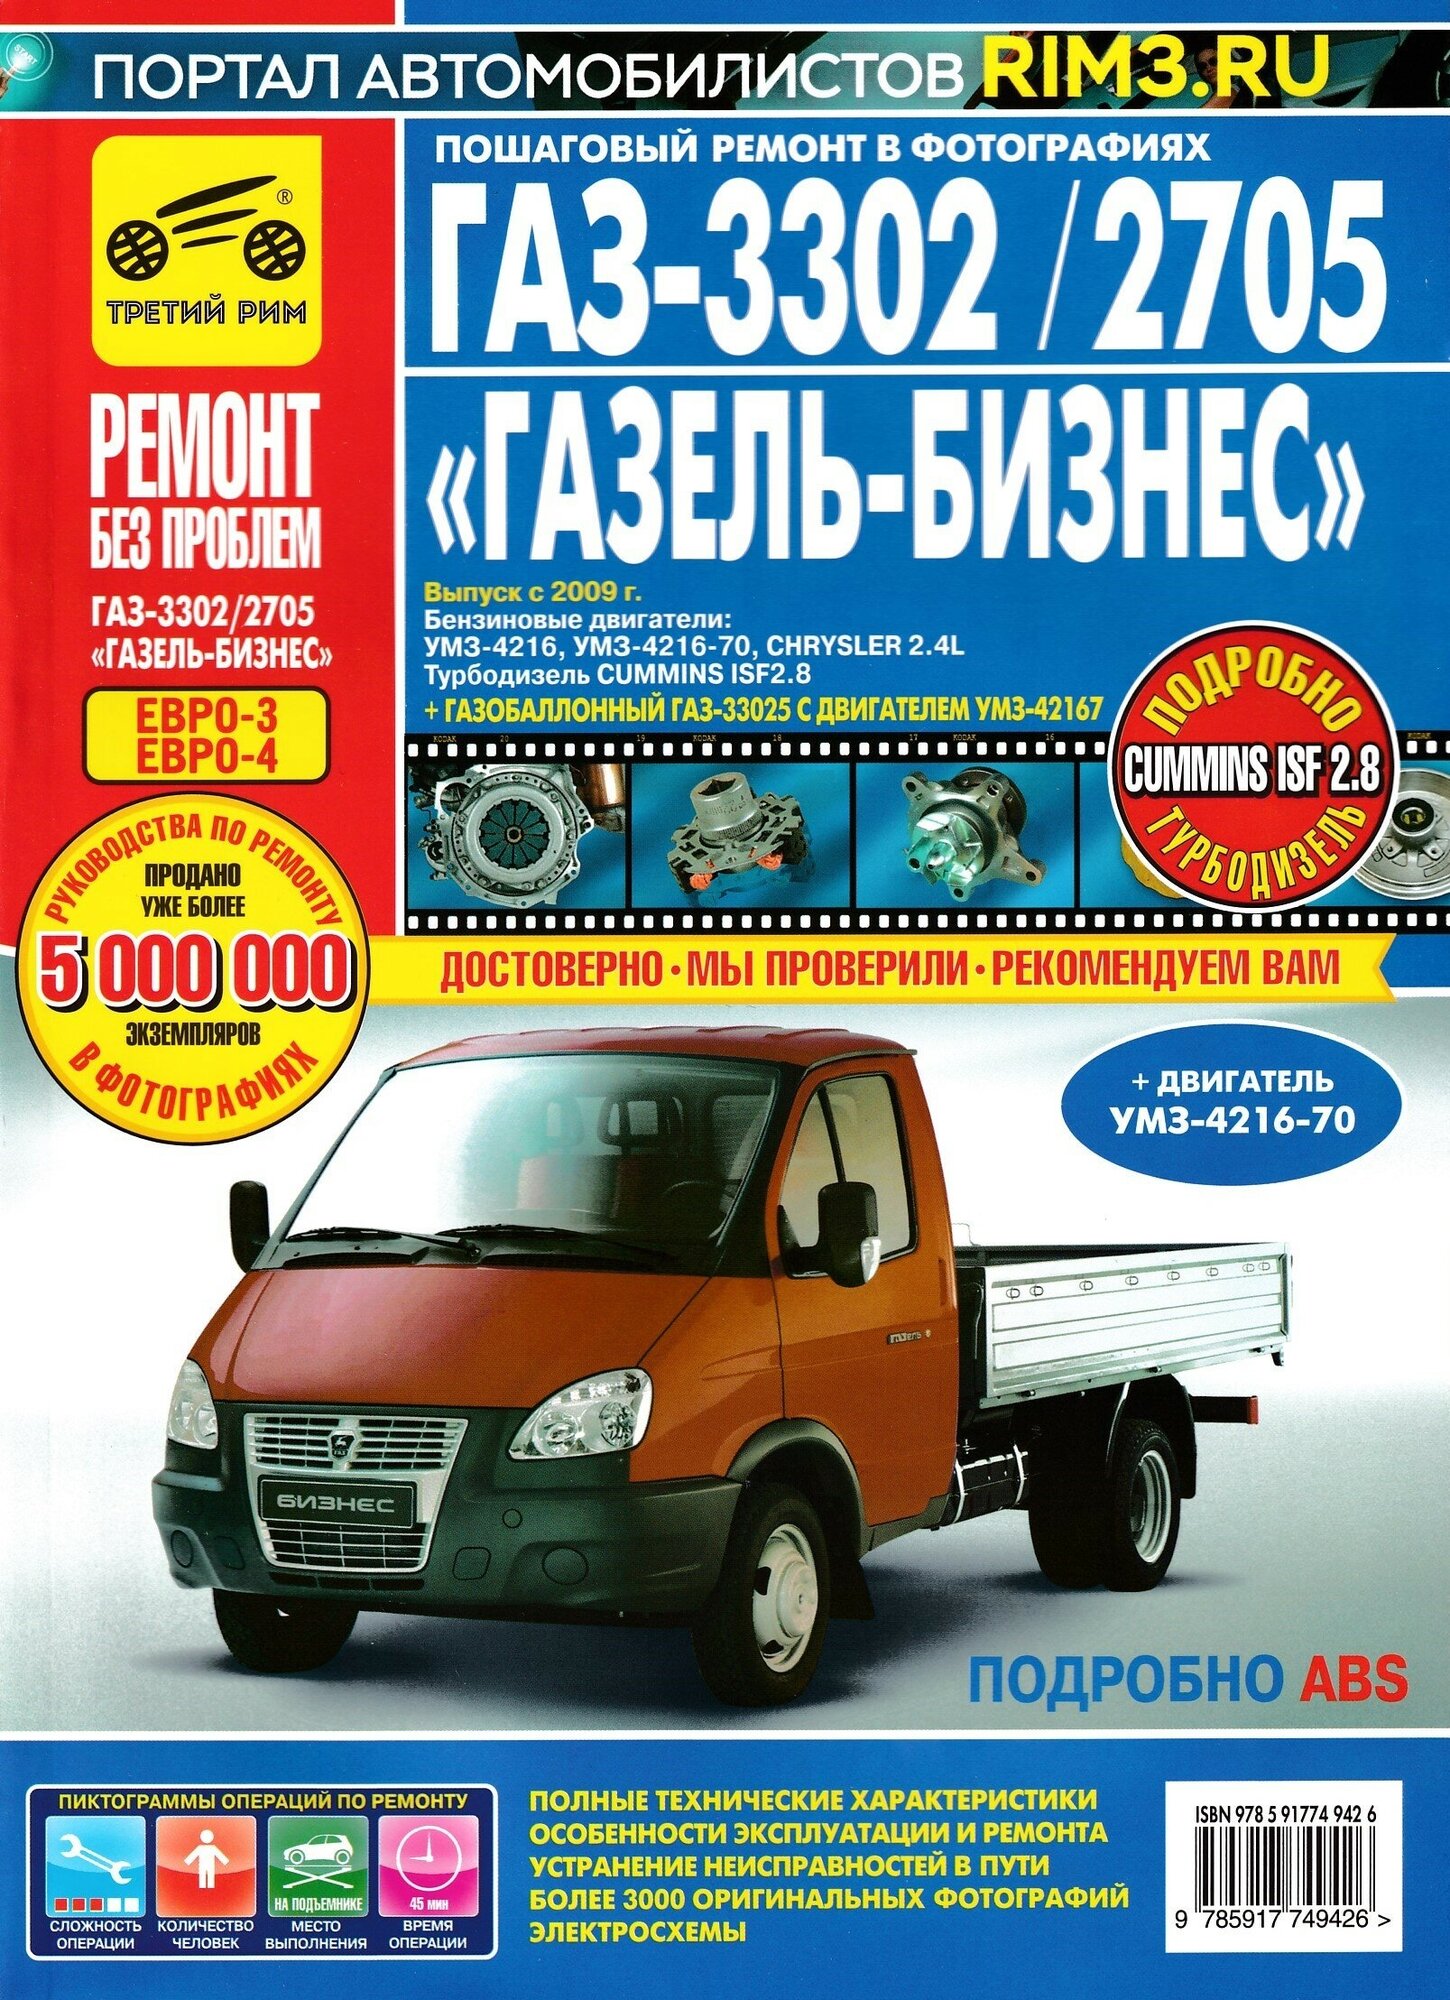 ГАЗ-3302/2705 "ГАЗель Бизнес с 2009 г. в. Руководство по эксплуатации, техническому обслуживанию и ремонту в цветных фотографиях.